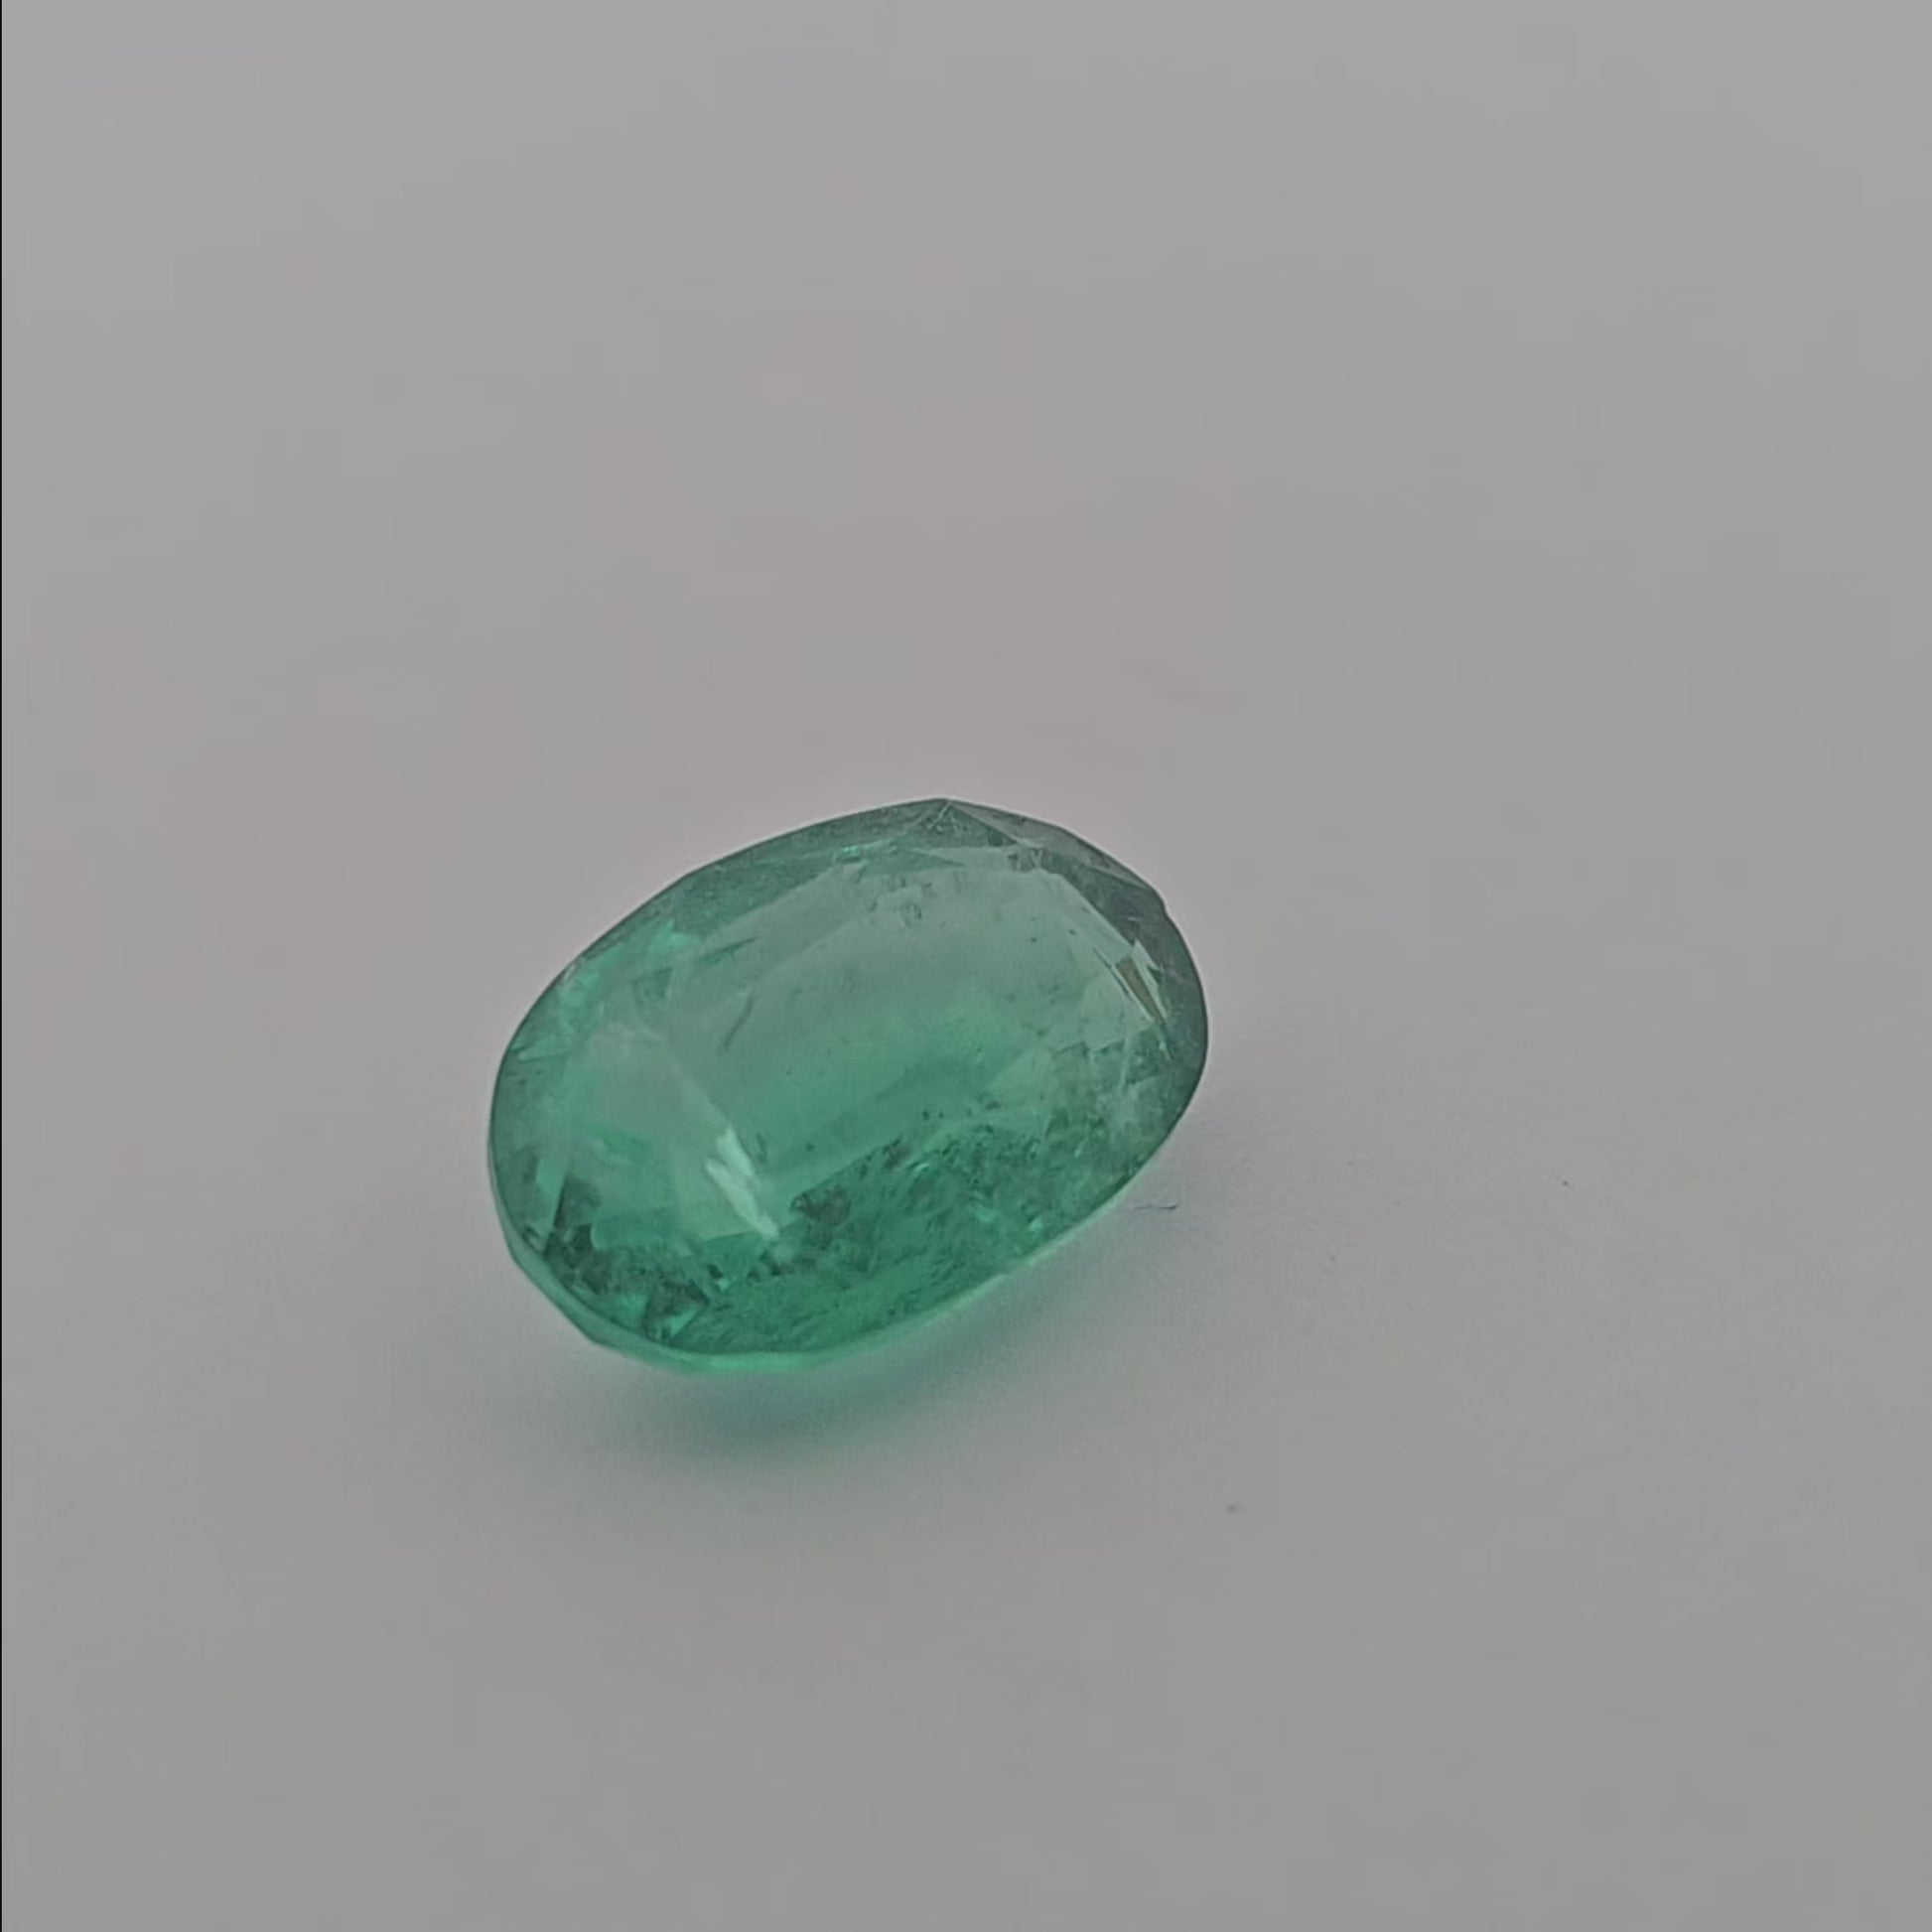 Natural Zambian Emerald Stone 5.52 Carats Oval Cut 13.7 x 9.4  mm